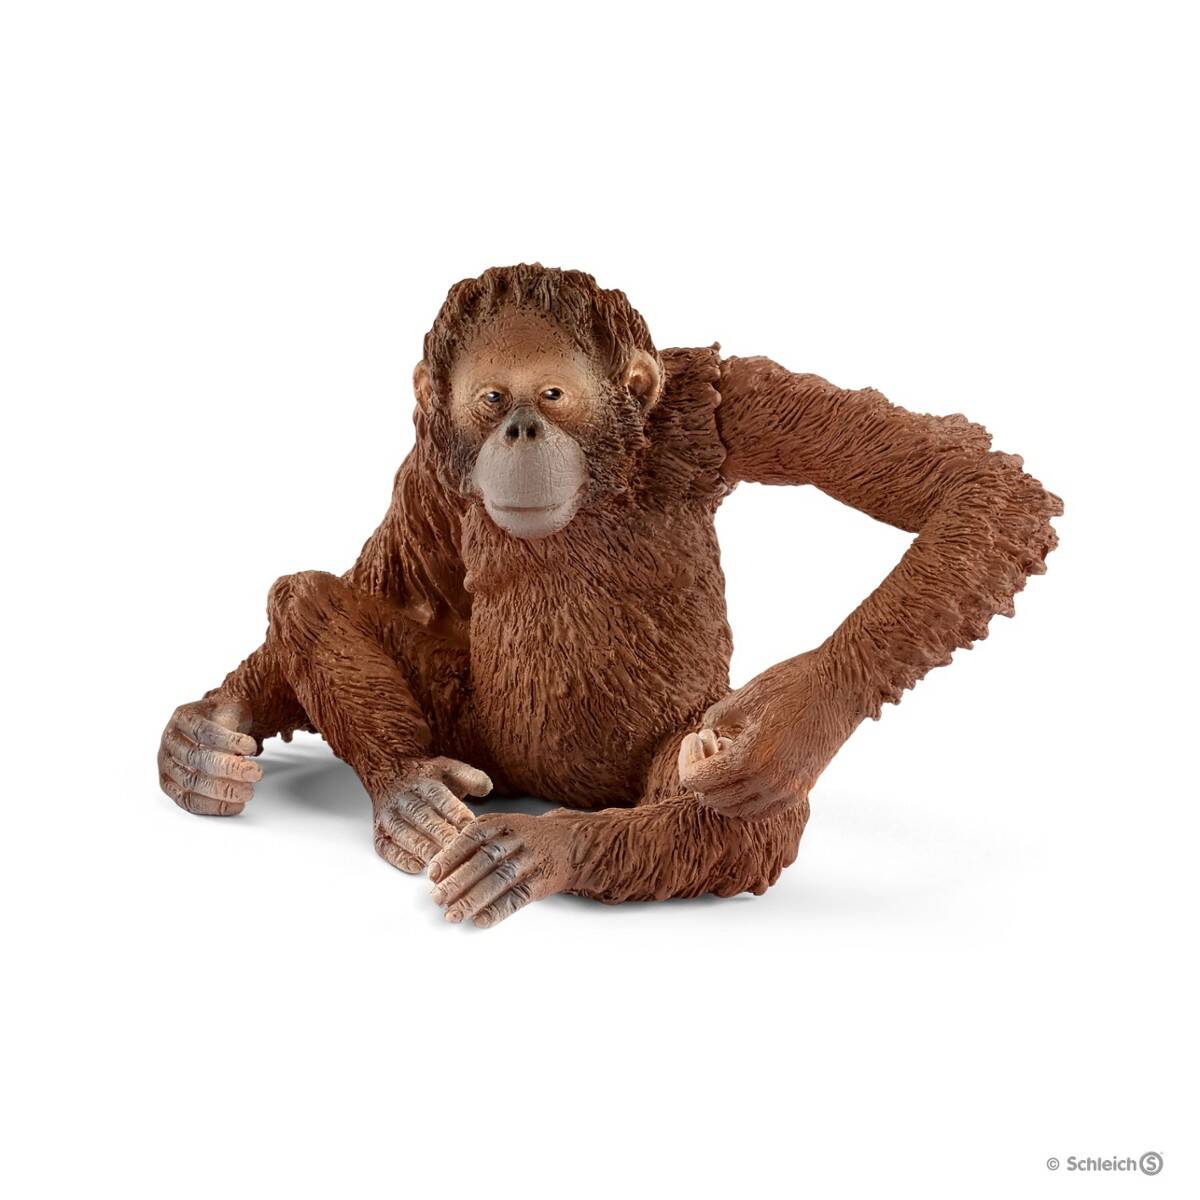 SCHLEICH figurka orangutan samica 14775